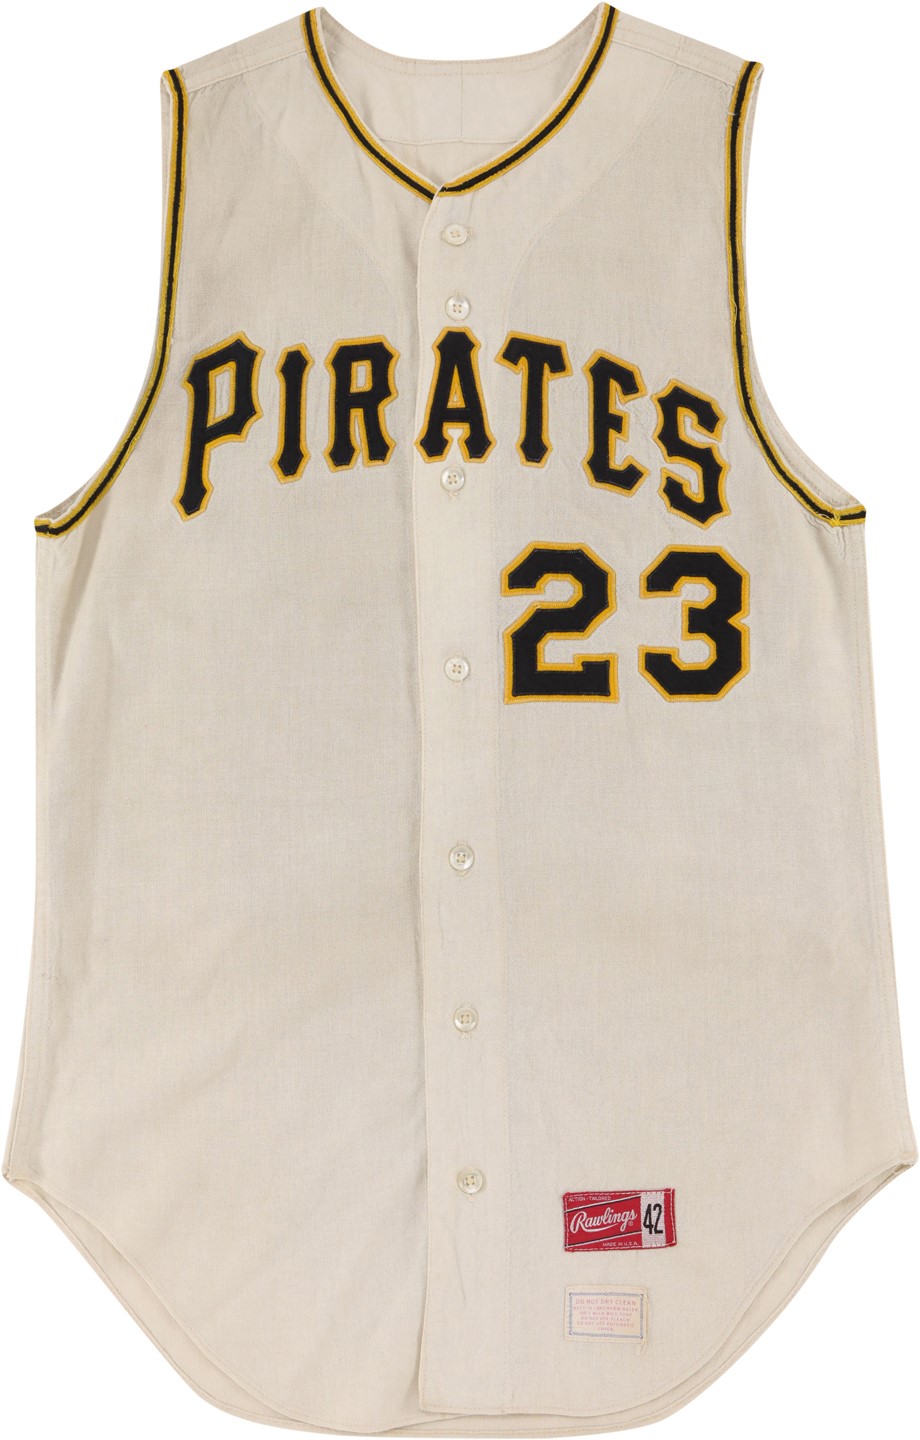 - Circa 1966 Pittsburgh Pirates Game Worn Jersey